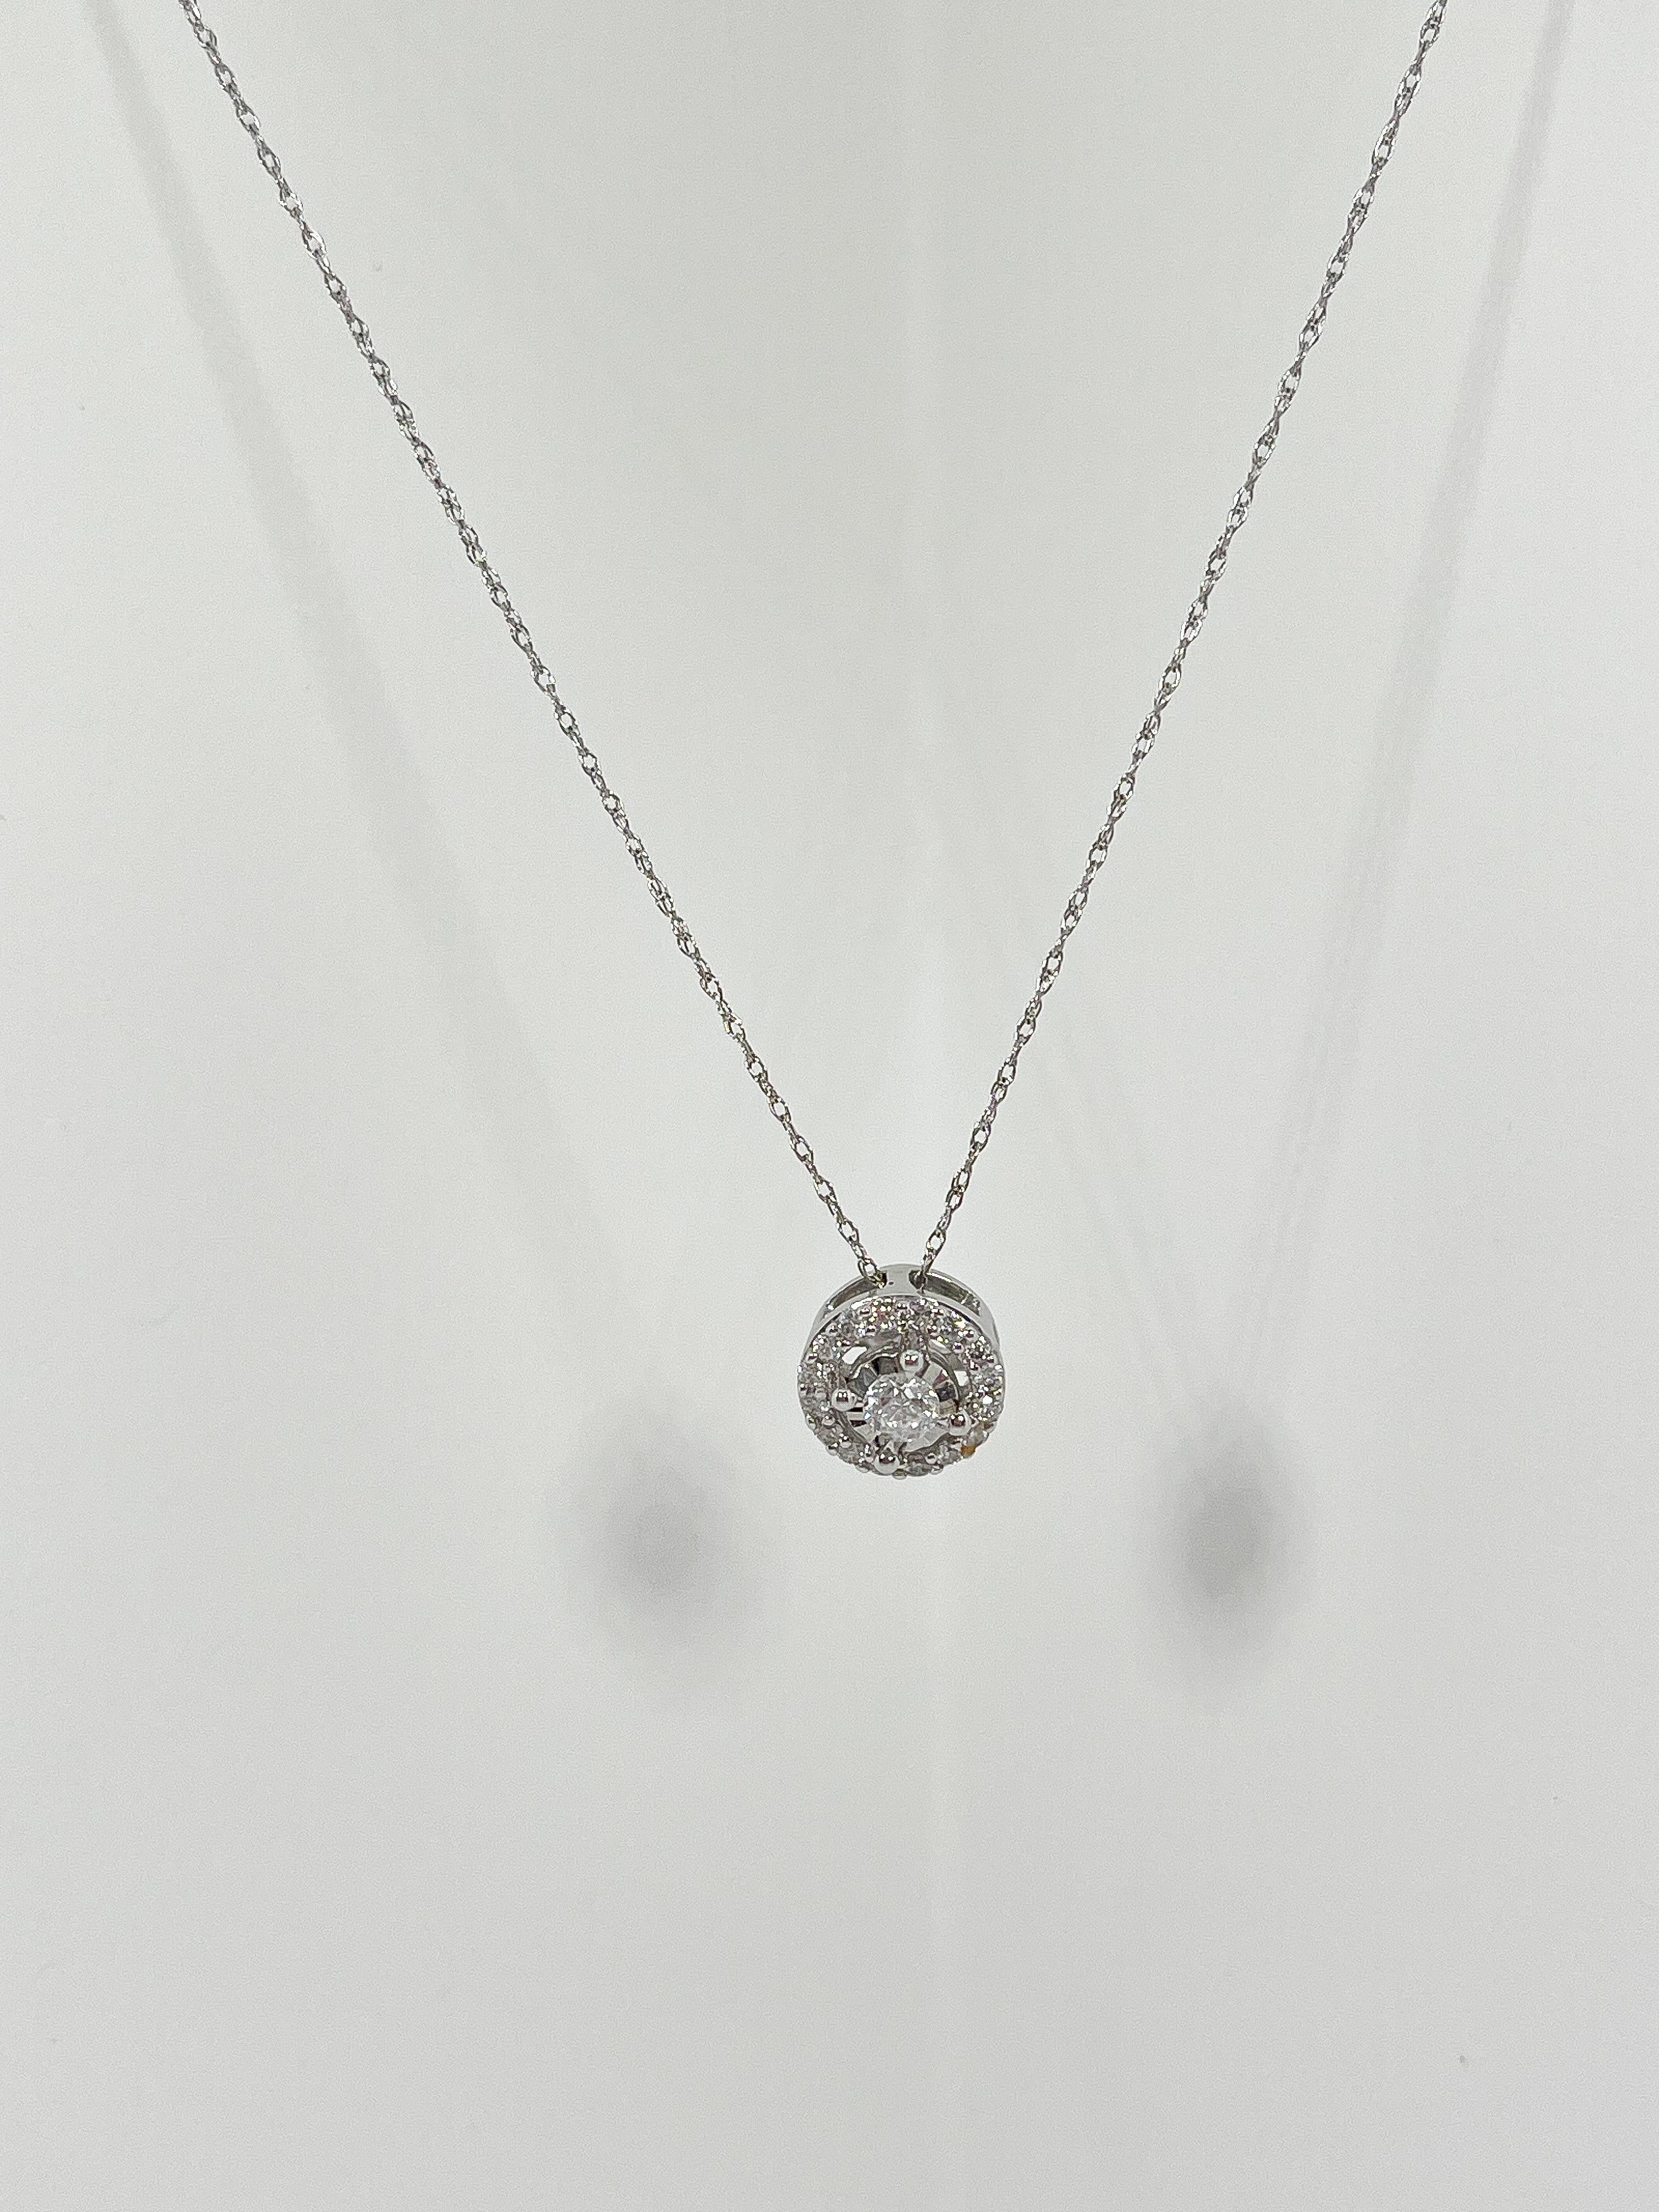 Collier en or blanc 14k avec halo de diamants de 0,50 CTW. Le pendentif est monté sur une chaîne de Singapour, a un diamètre de 9.1, le collier a une longueur de 18 pouces, et un poids total de 1.87.